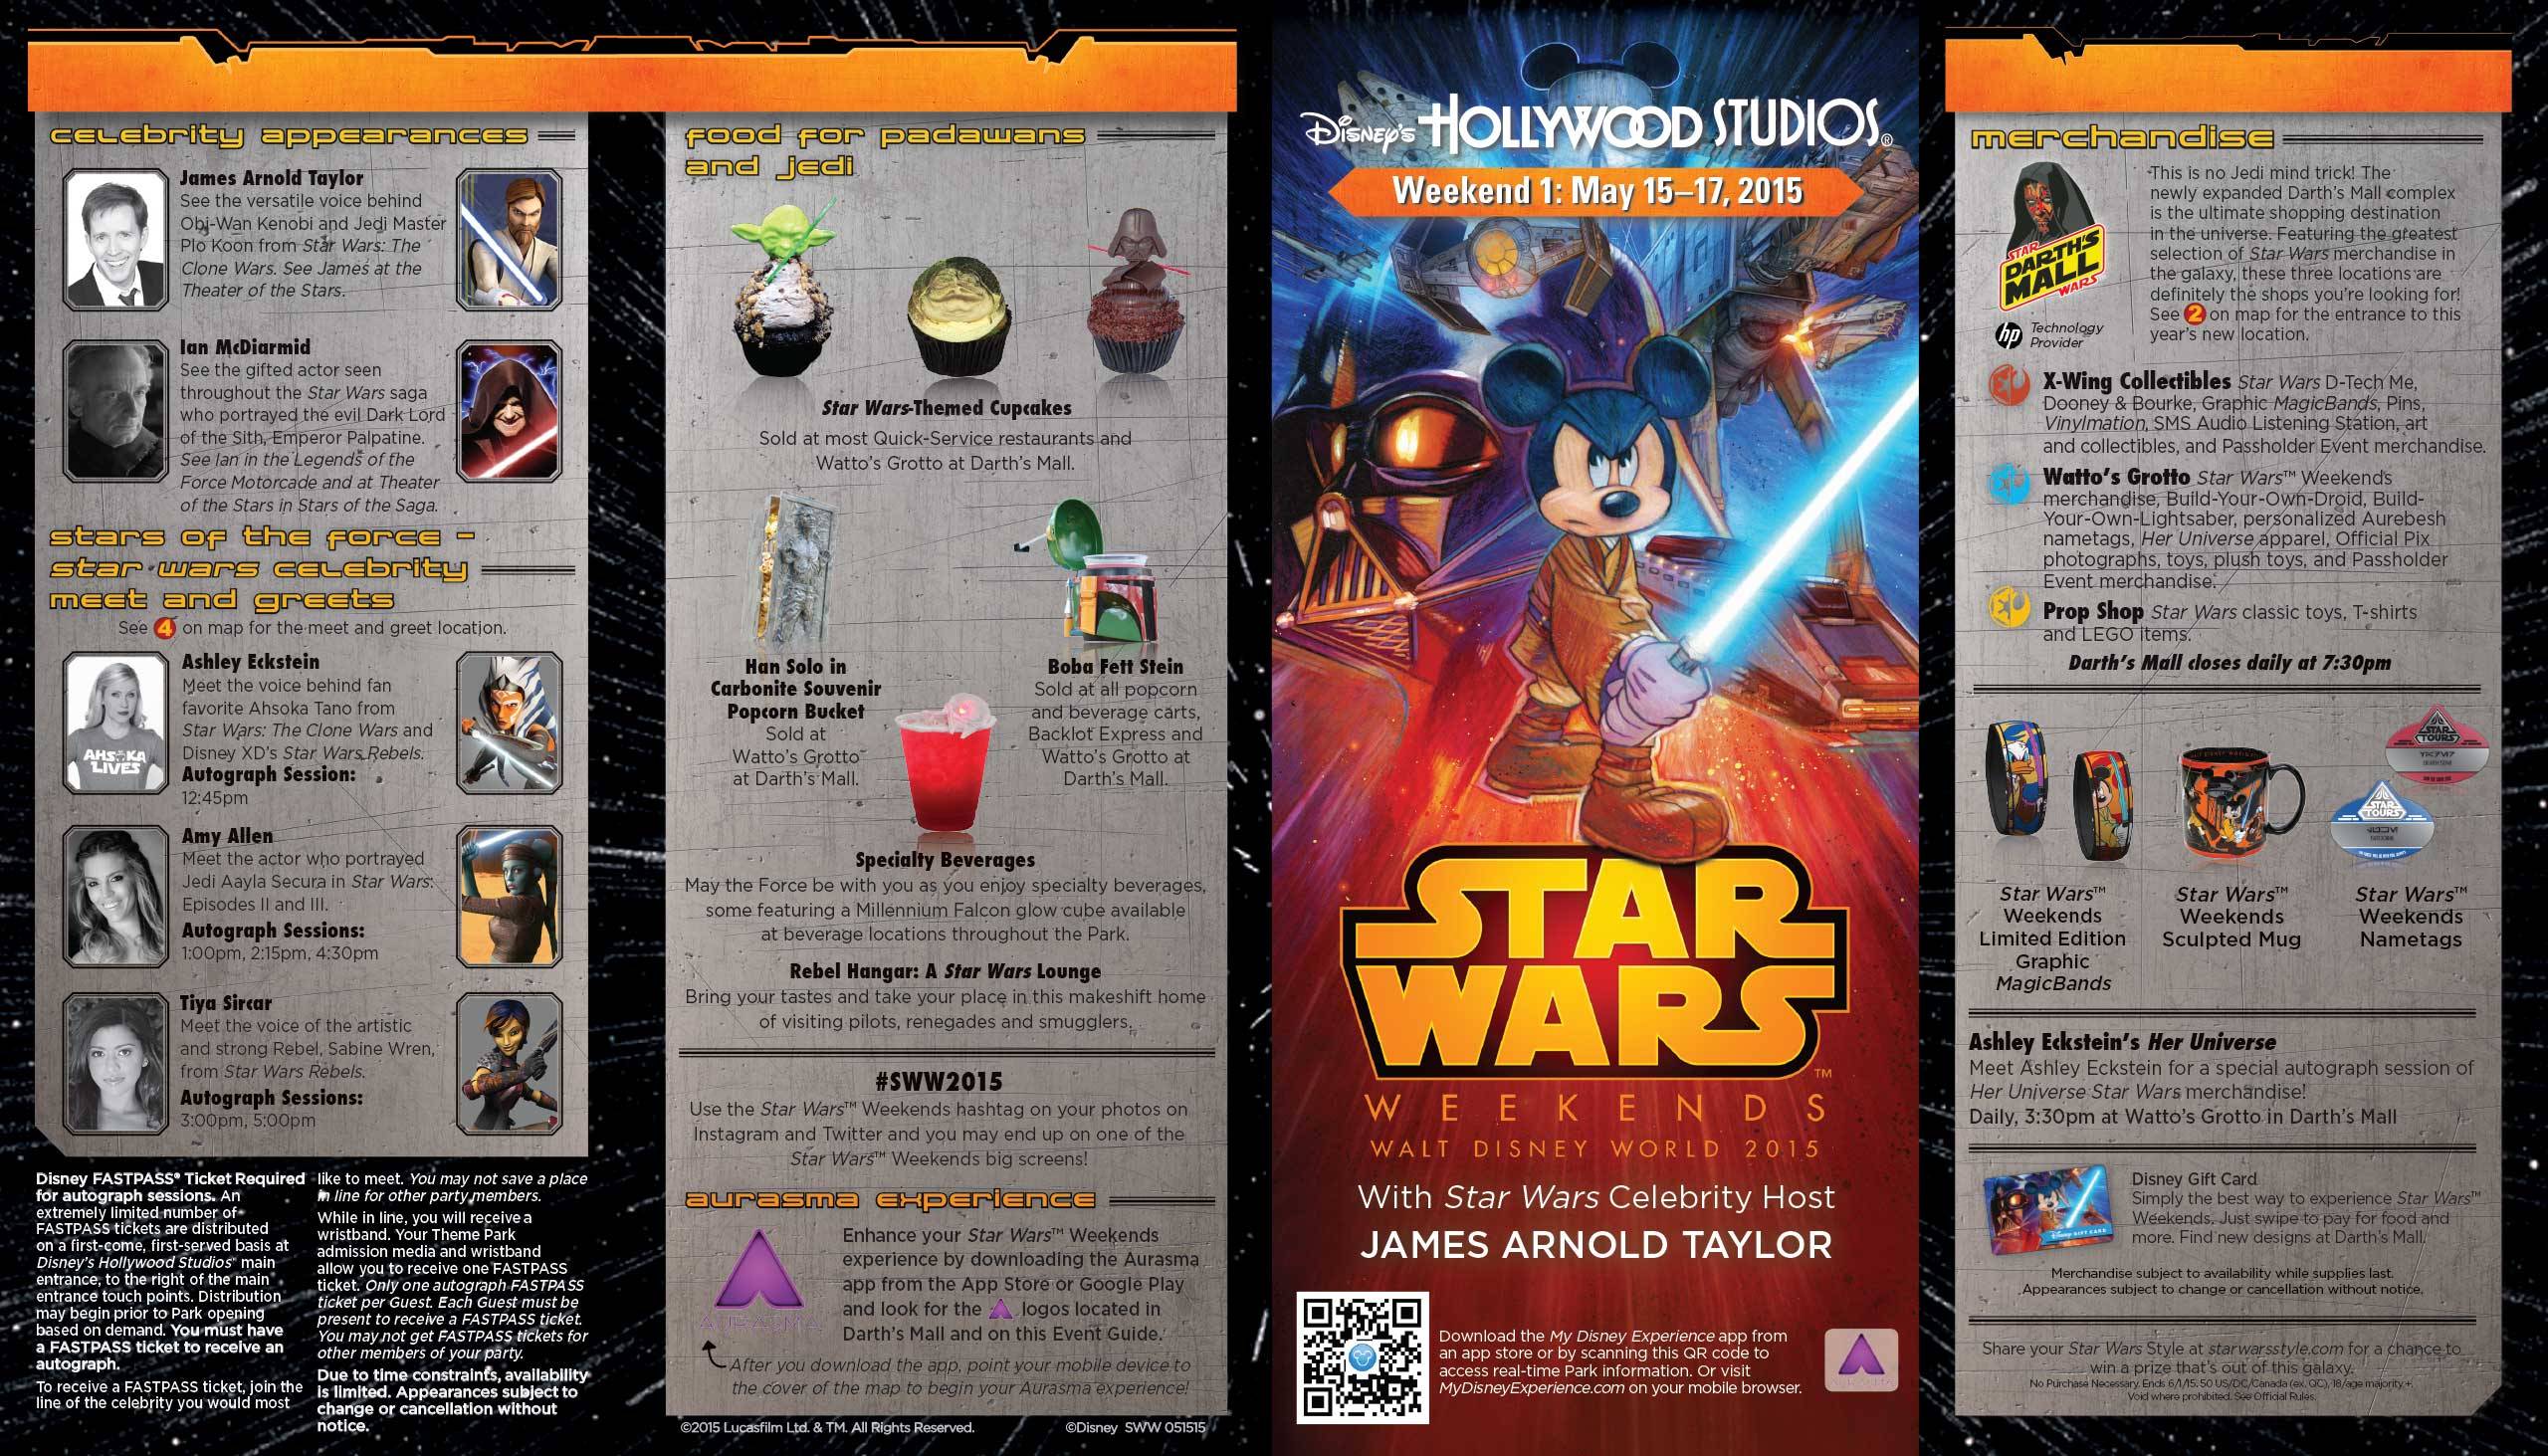 2015 Star Wars Weekends May 15-17 Weekend 1 guide map